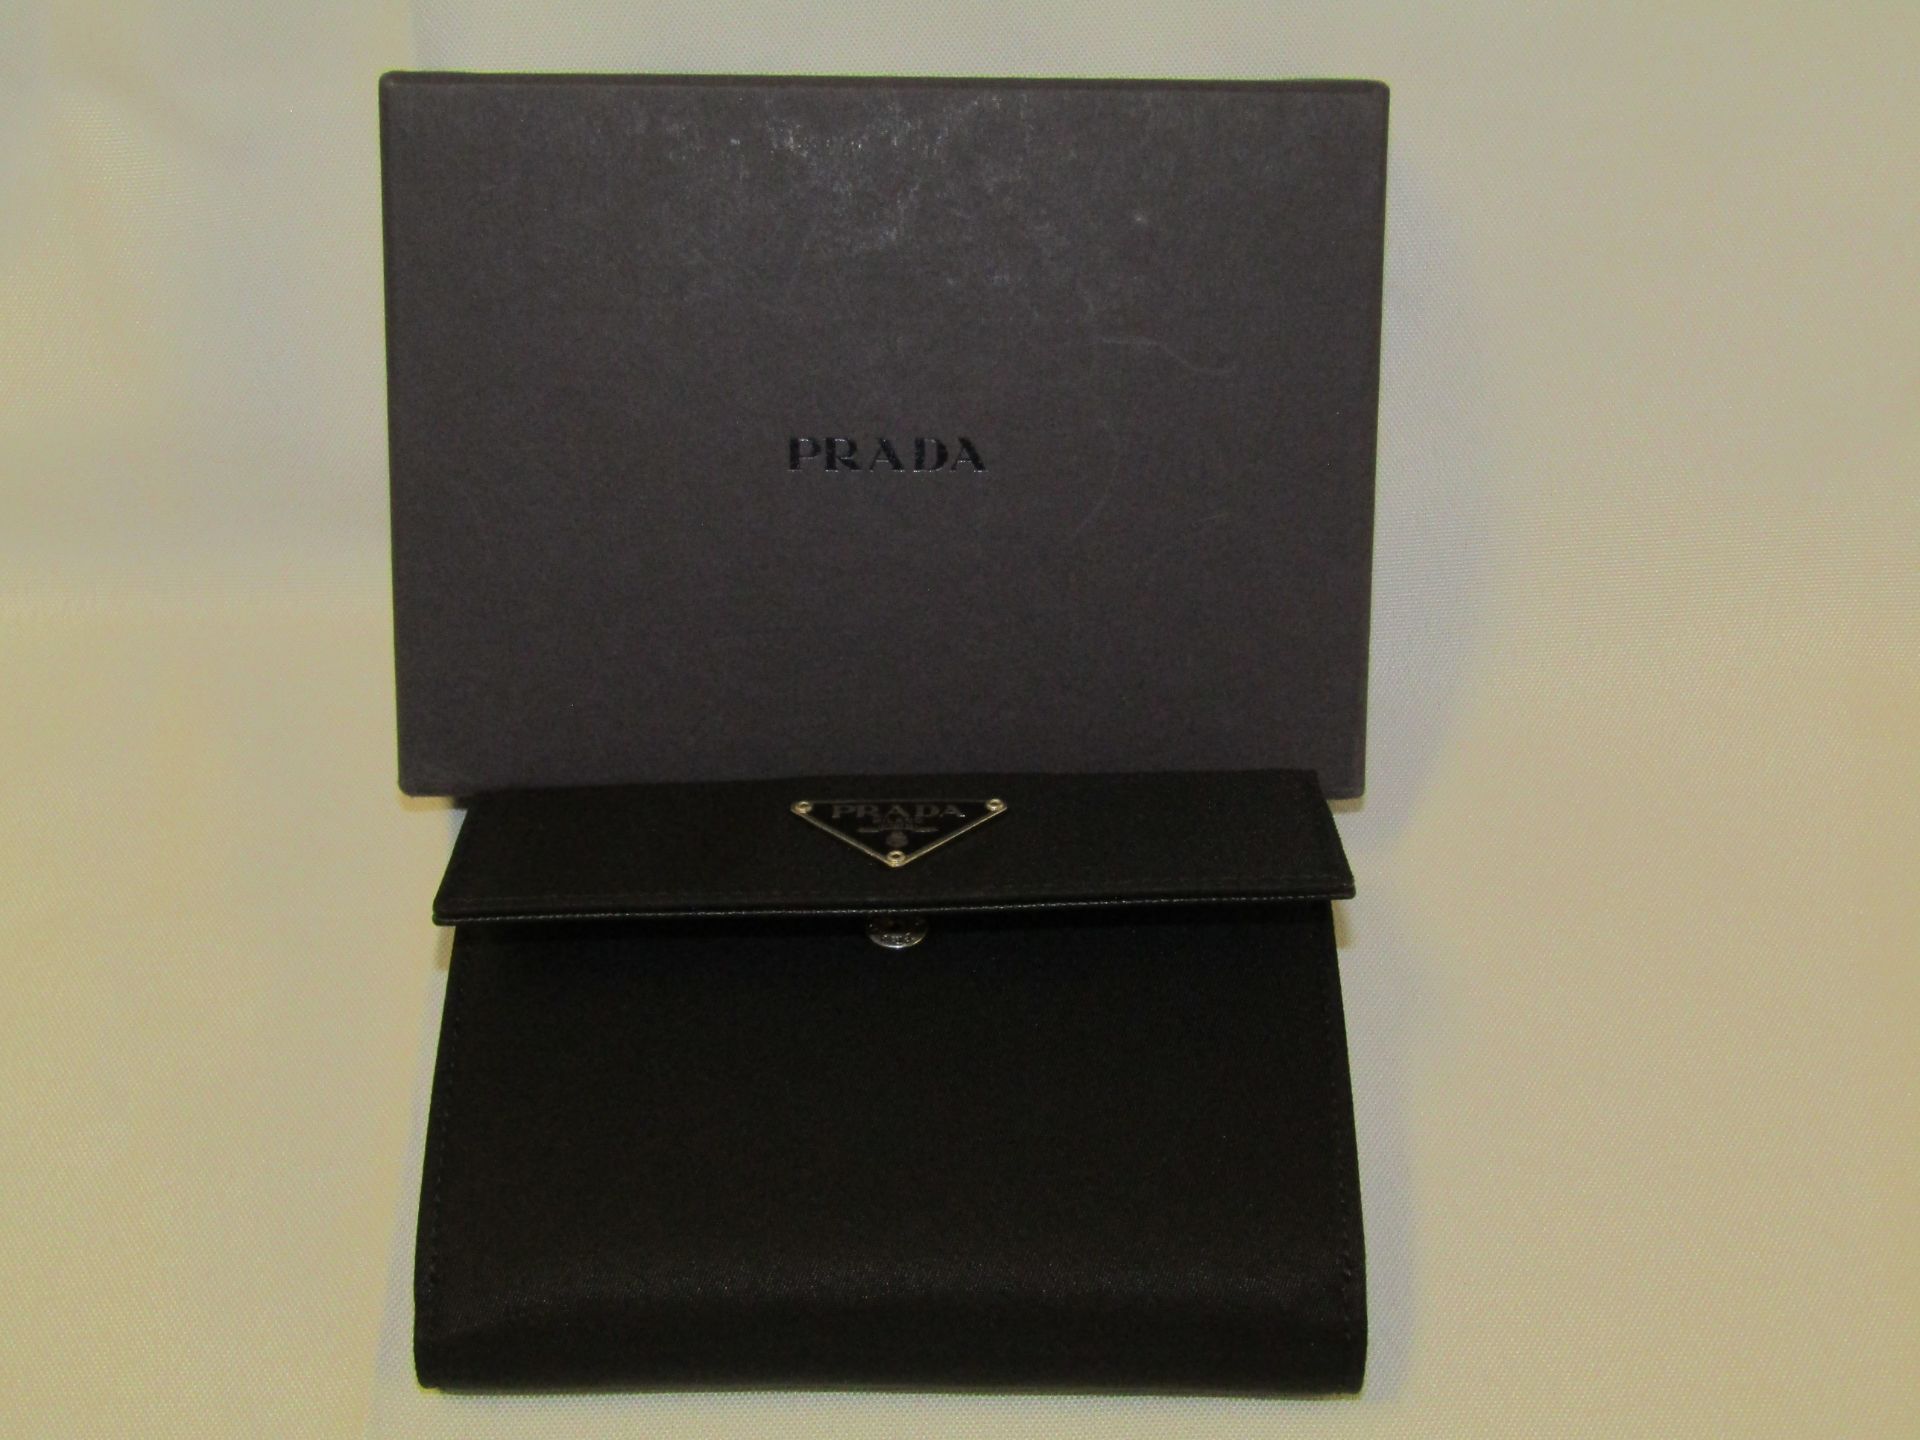 Genuine Prada Nylon purse in excellent conditon with original box